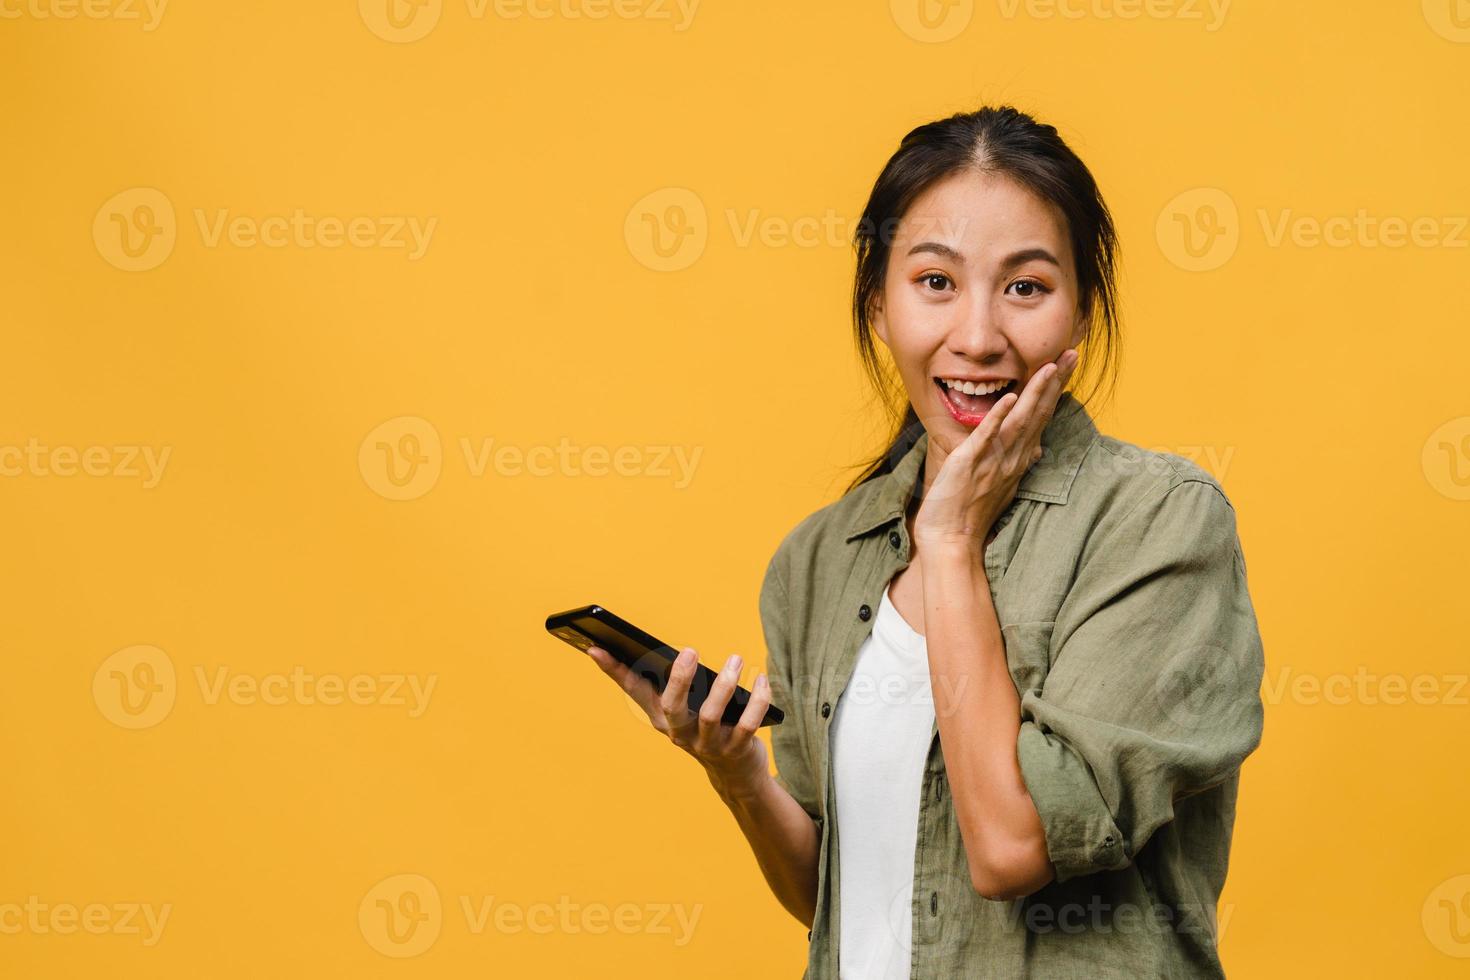 verraste jonge azië dame met behulp van mobiele telefoon met positieve uitdrukking, breed glimlachen, gekleed in casual kleding en camera kijken op gele achtergrond. gelukkige schattige blije vrouw verheugt zich over succes. foto